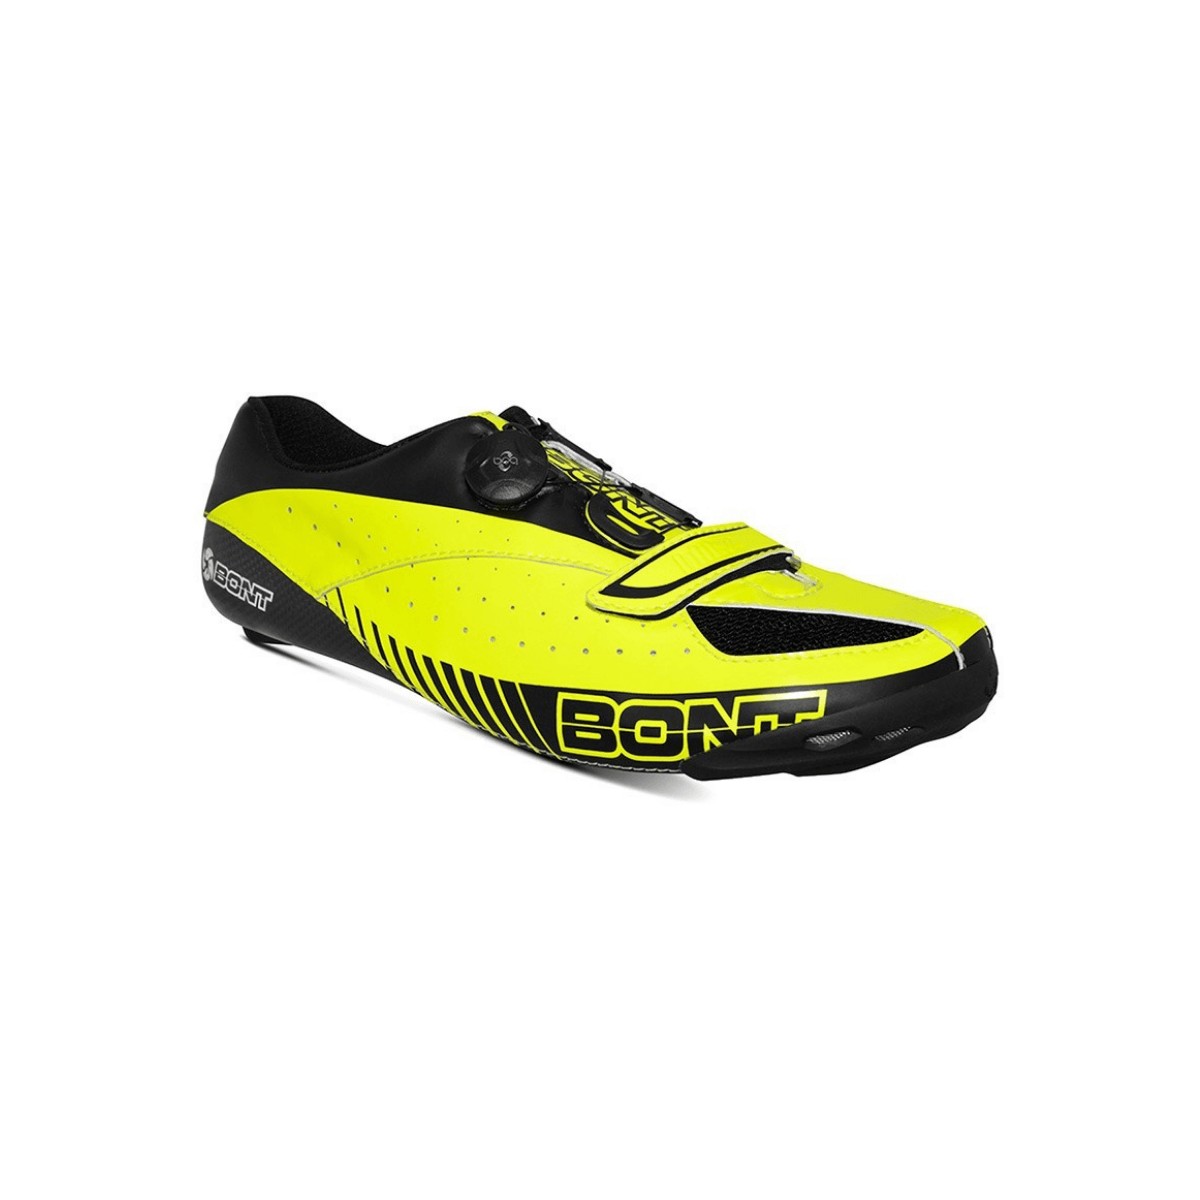 Bont Blitz Road Cycling Shoe Yellow Black, Size 41 - EUR